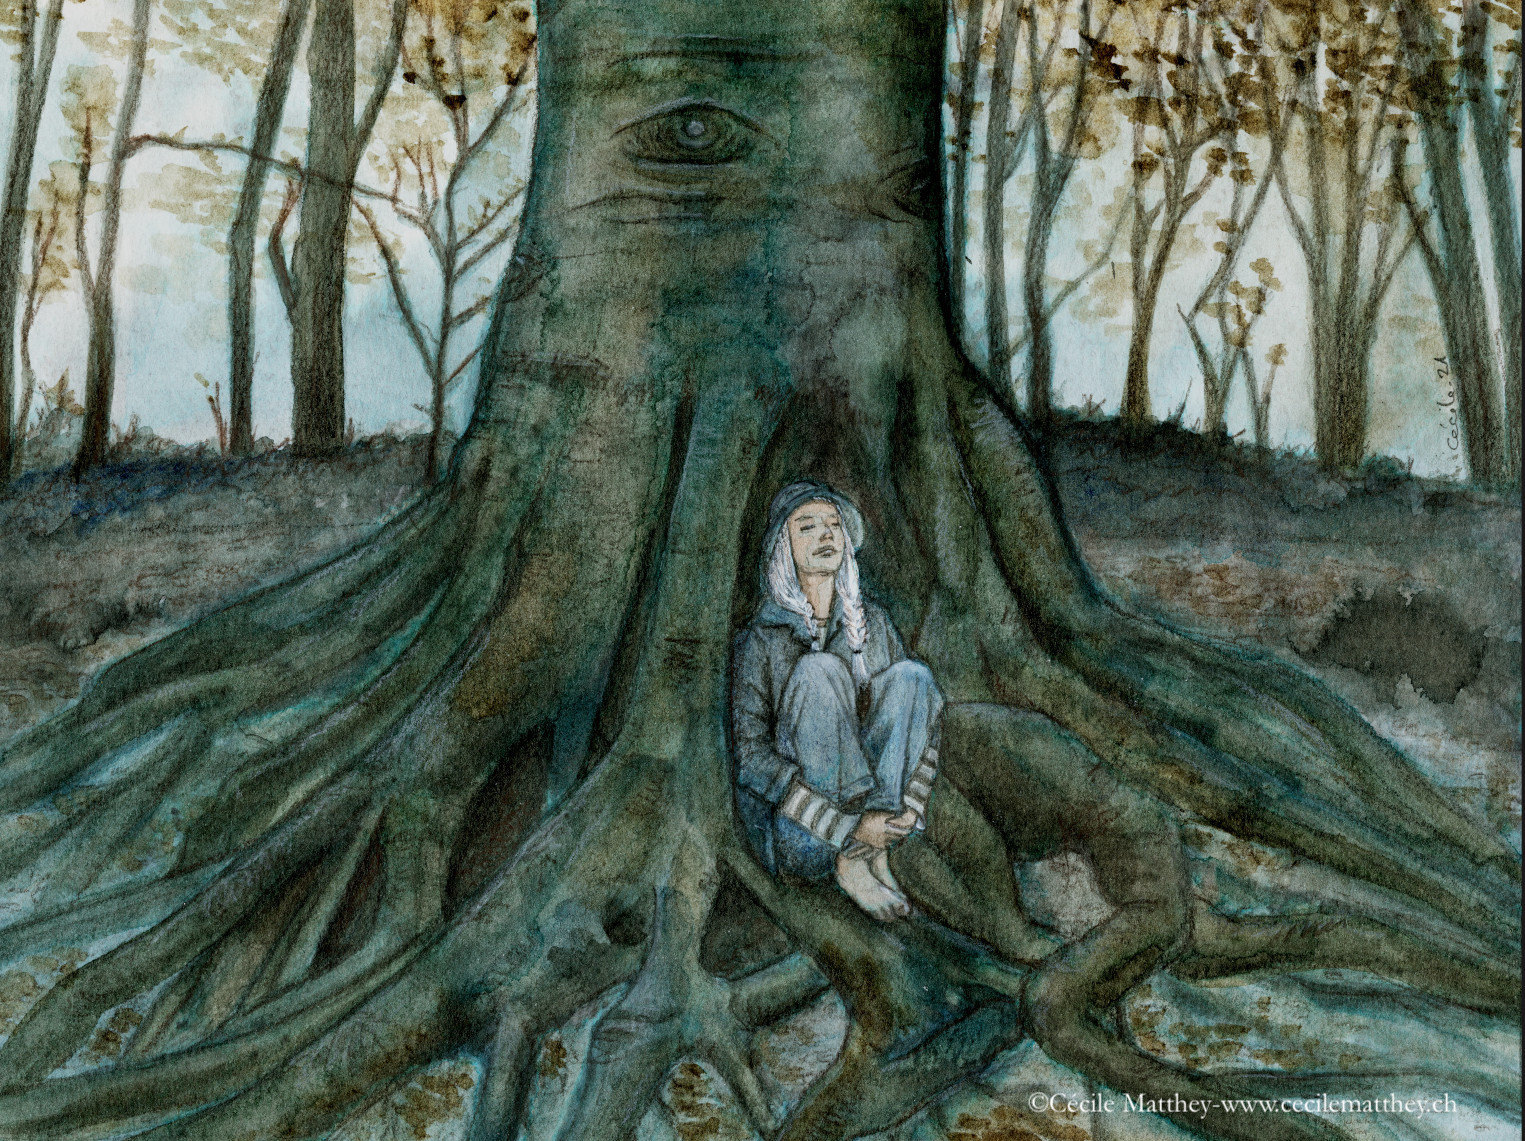 Jane lovée entre les racines d'un vieux hêtre. Qui écoute qui? Illustration pour "The listener" de Sim Kern (webzine The Future Fire n° 2021.56)